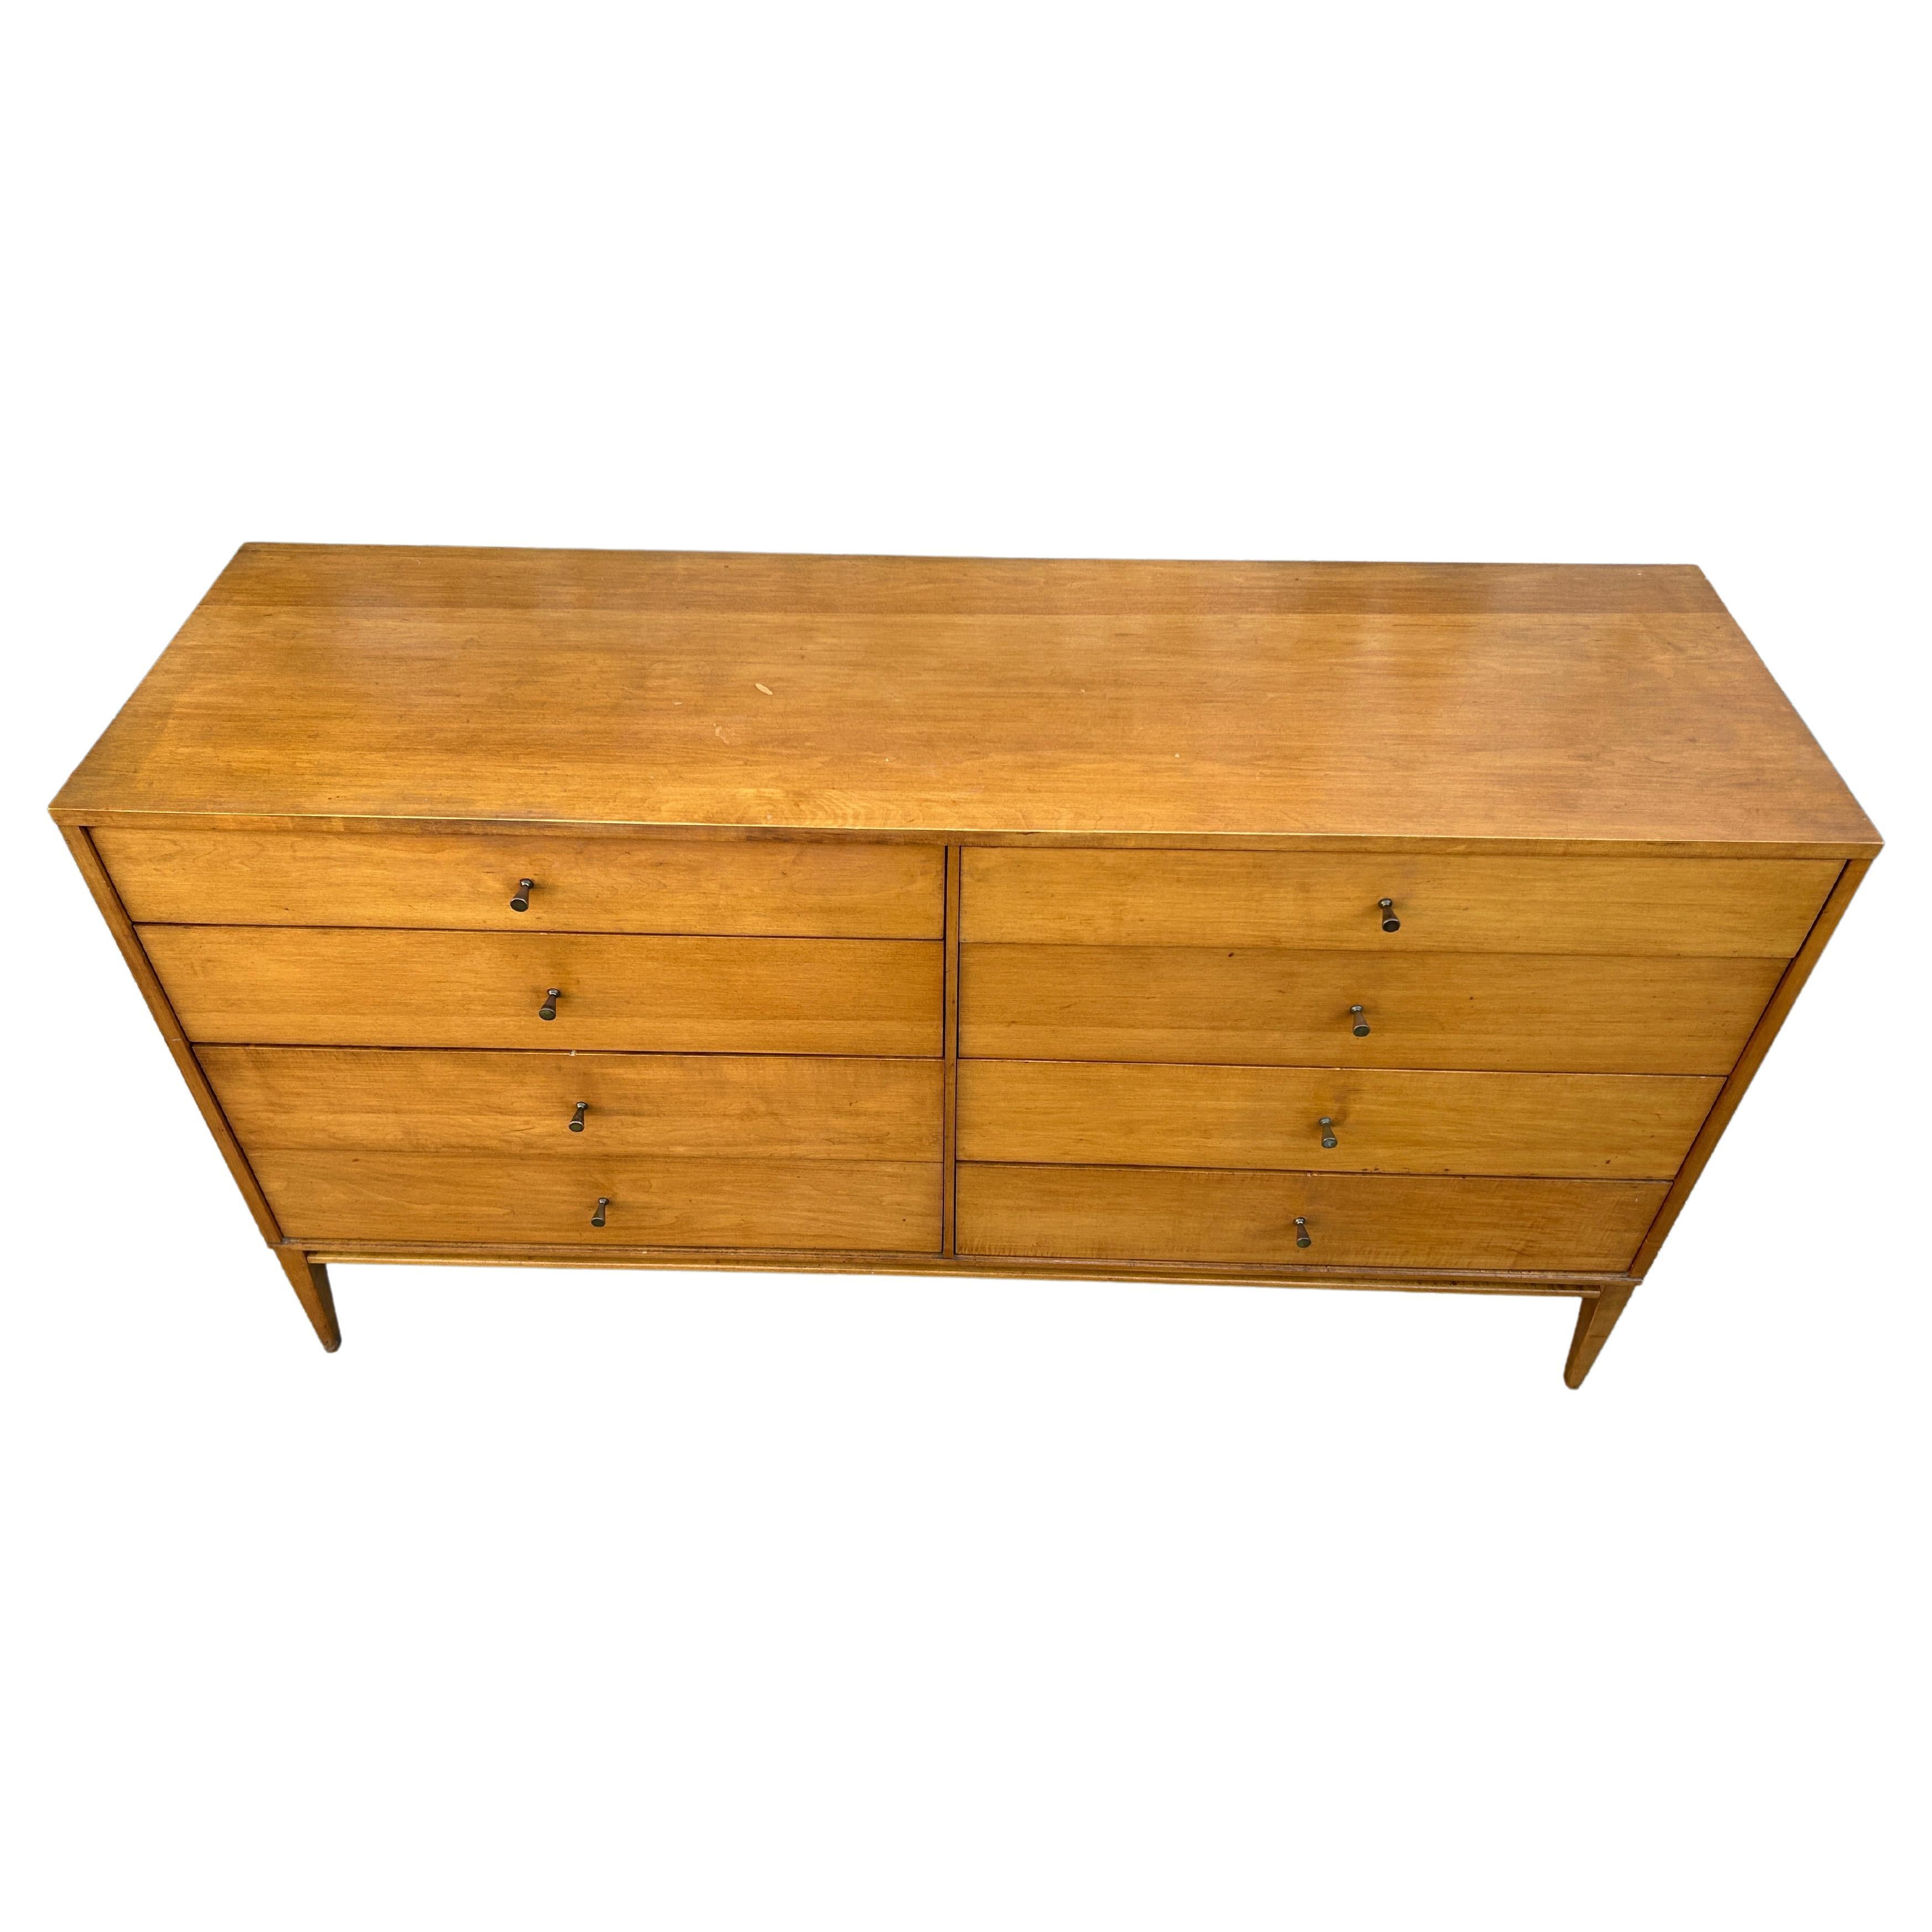 Woodwork Mid-Century Paul McCobb 8-Drawer Dresser Credenza #1507 Blonde Maple Brass Pulls For Sale